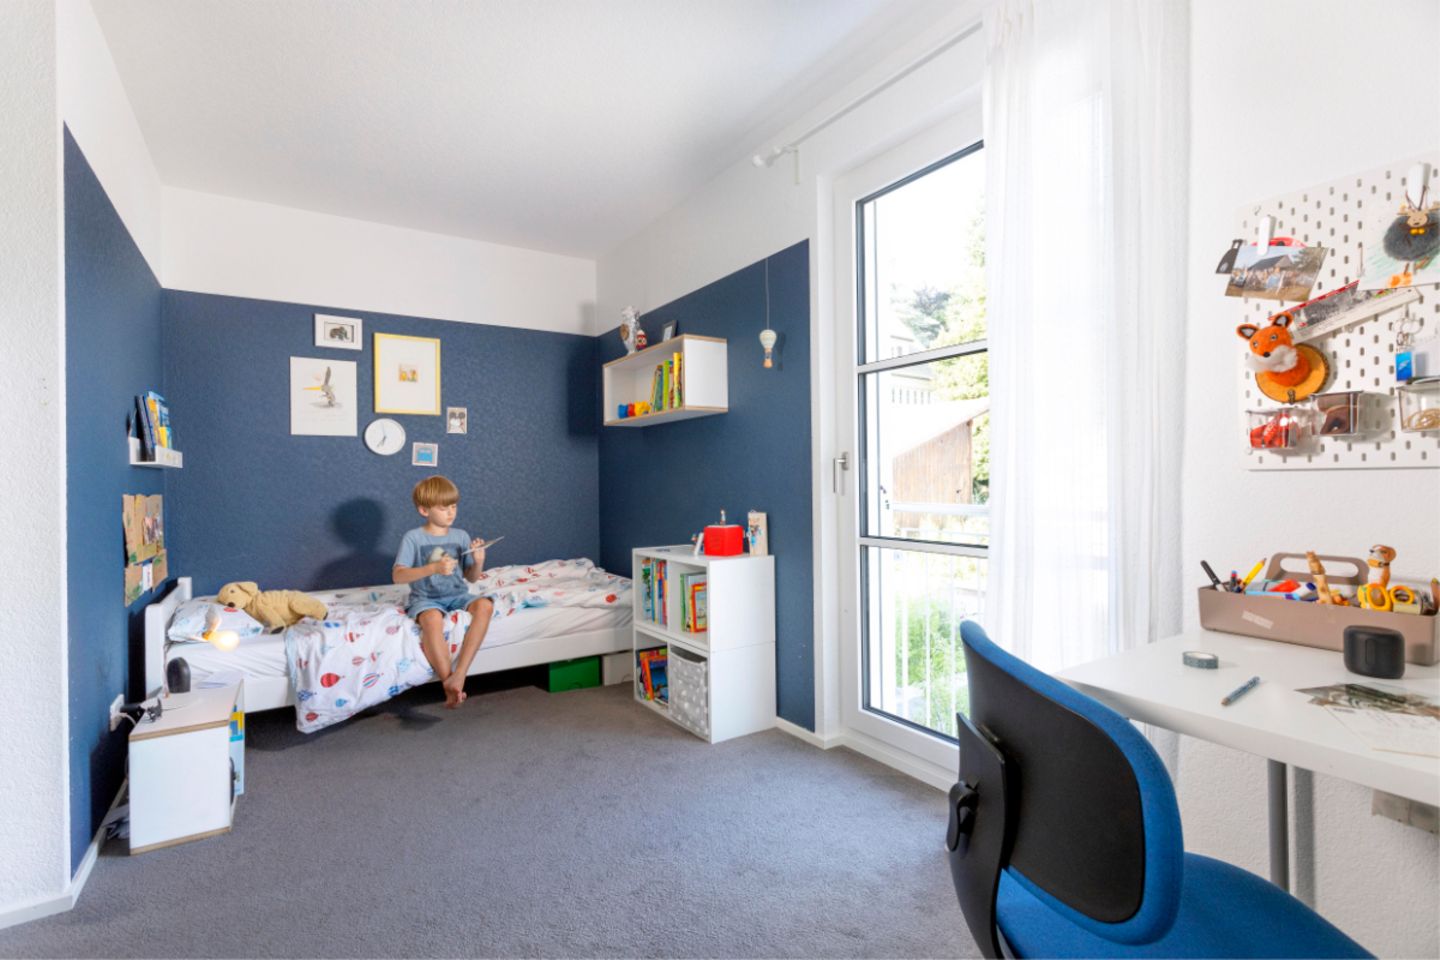 Junge auf Bett in Kinderzimmer mit blauen Wänden und Bodenbelag